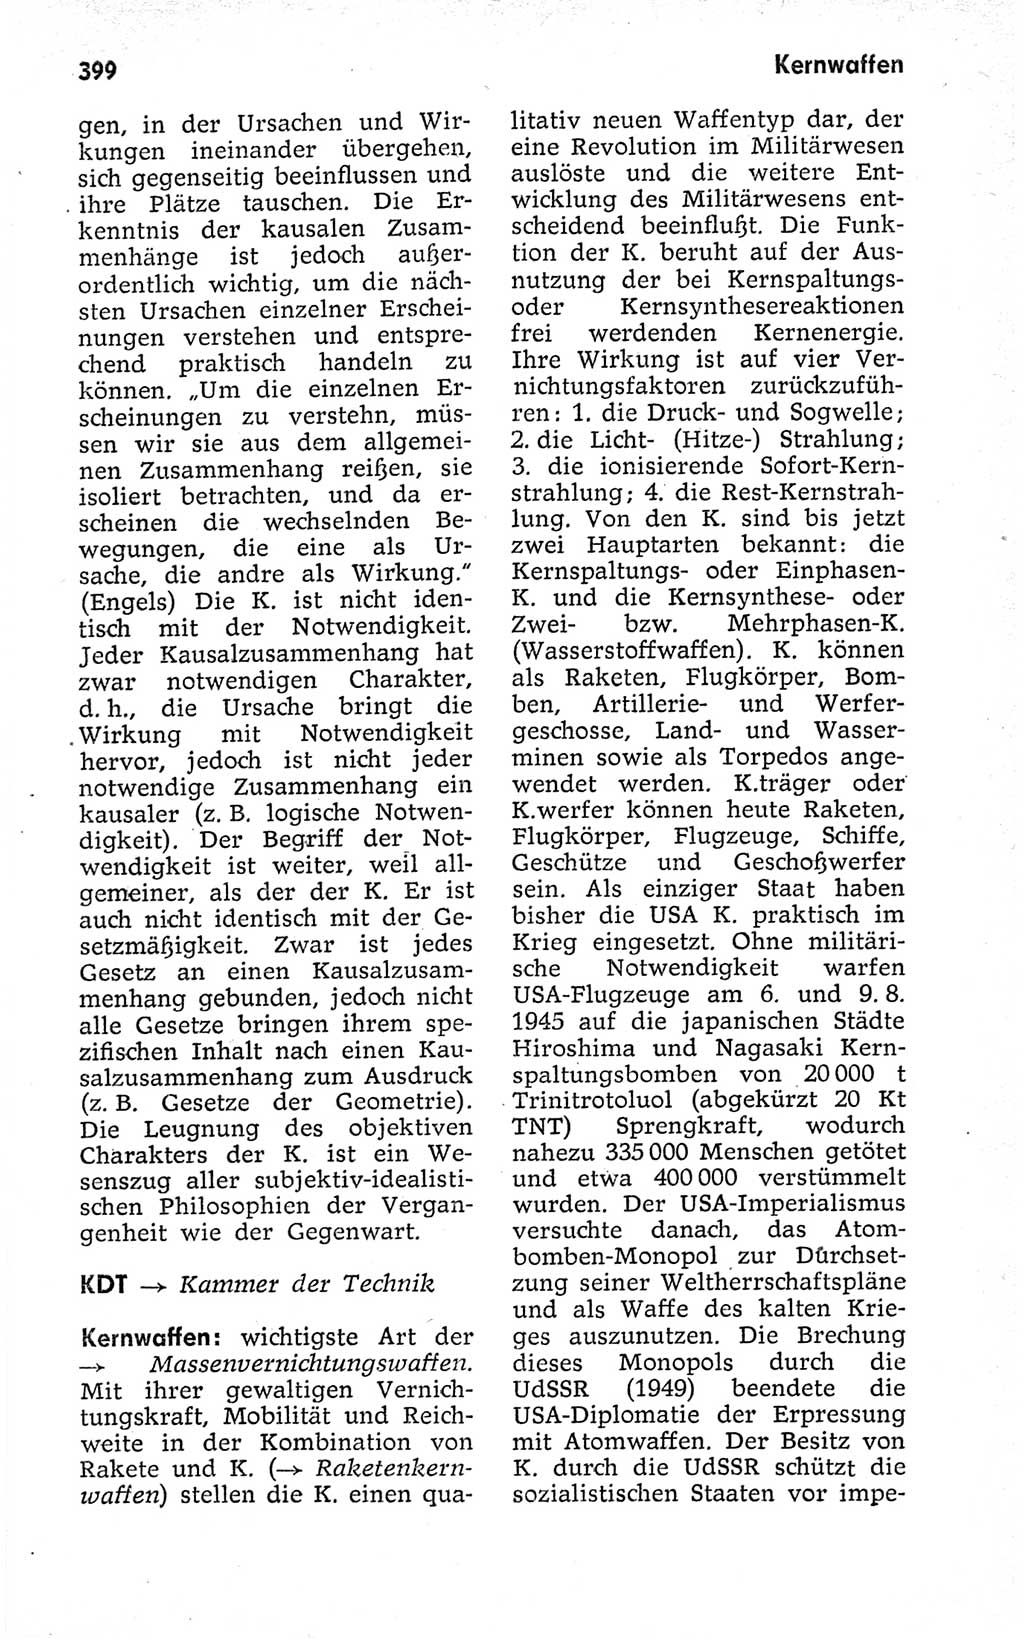 Kleines politisches Wörterbuch [Deutsche Demokratische Republik (DDR)] 1973, Seite 399 (Kl. pol. Wb. DDR 1973, S. 399)